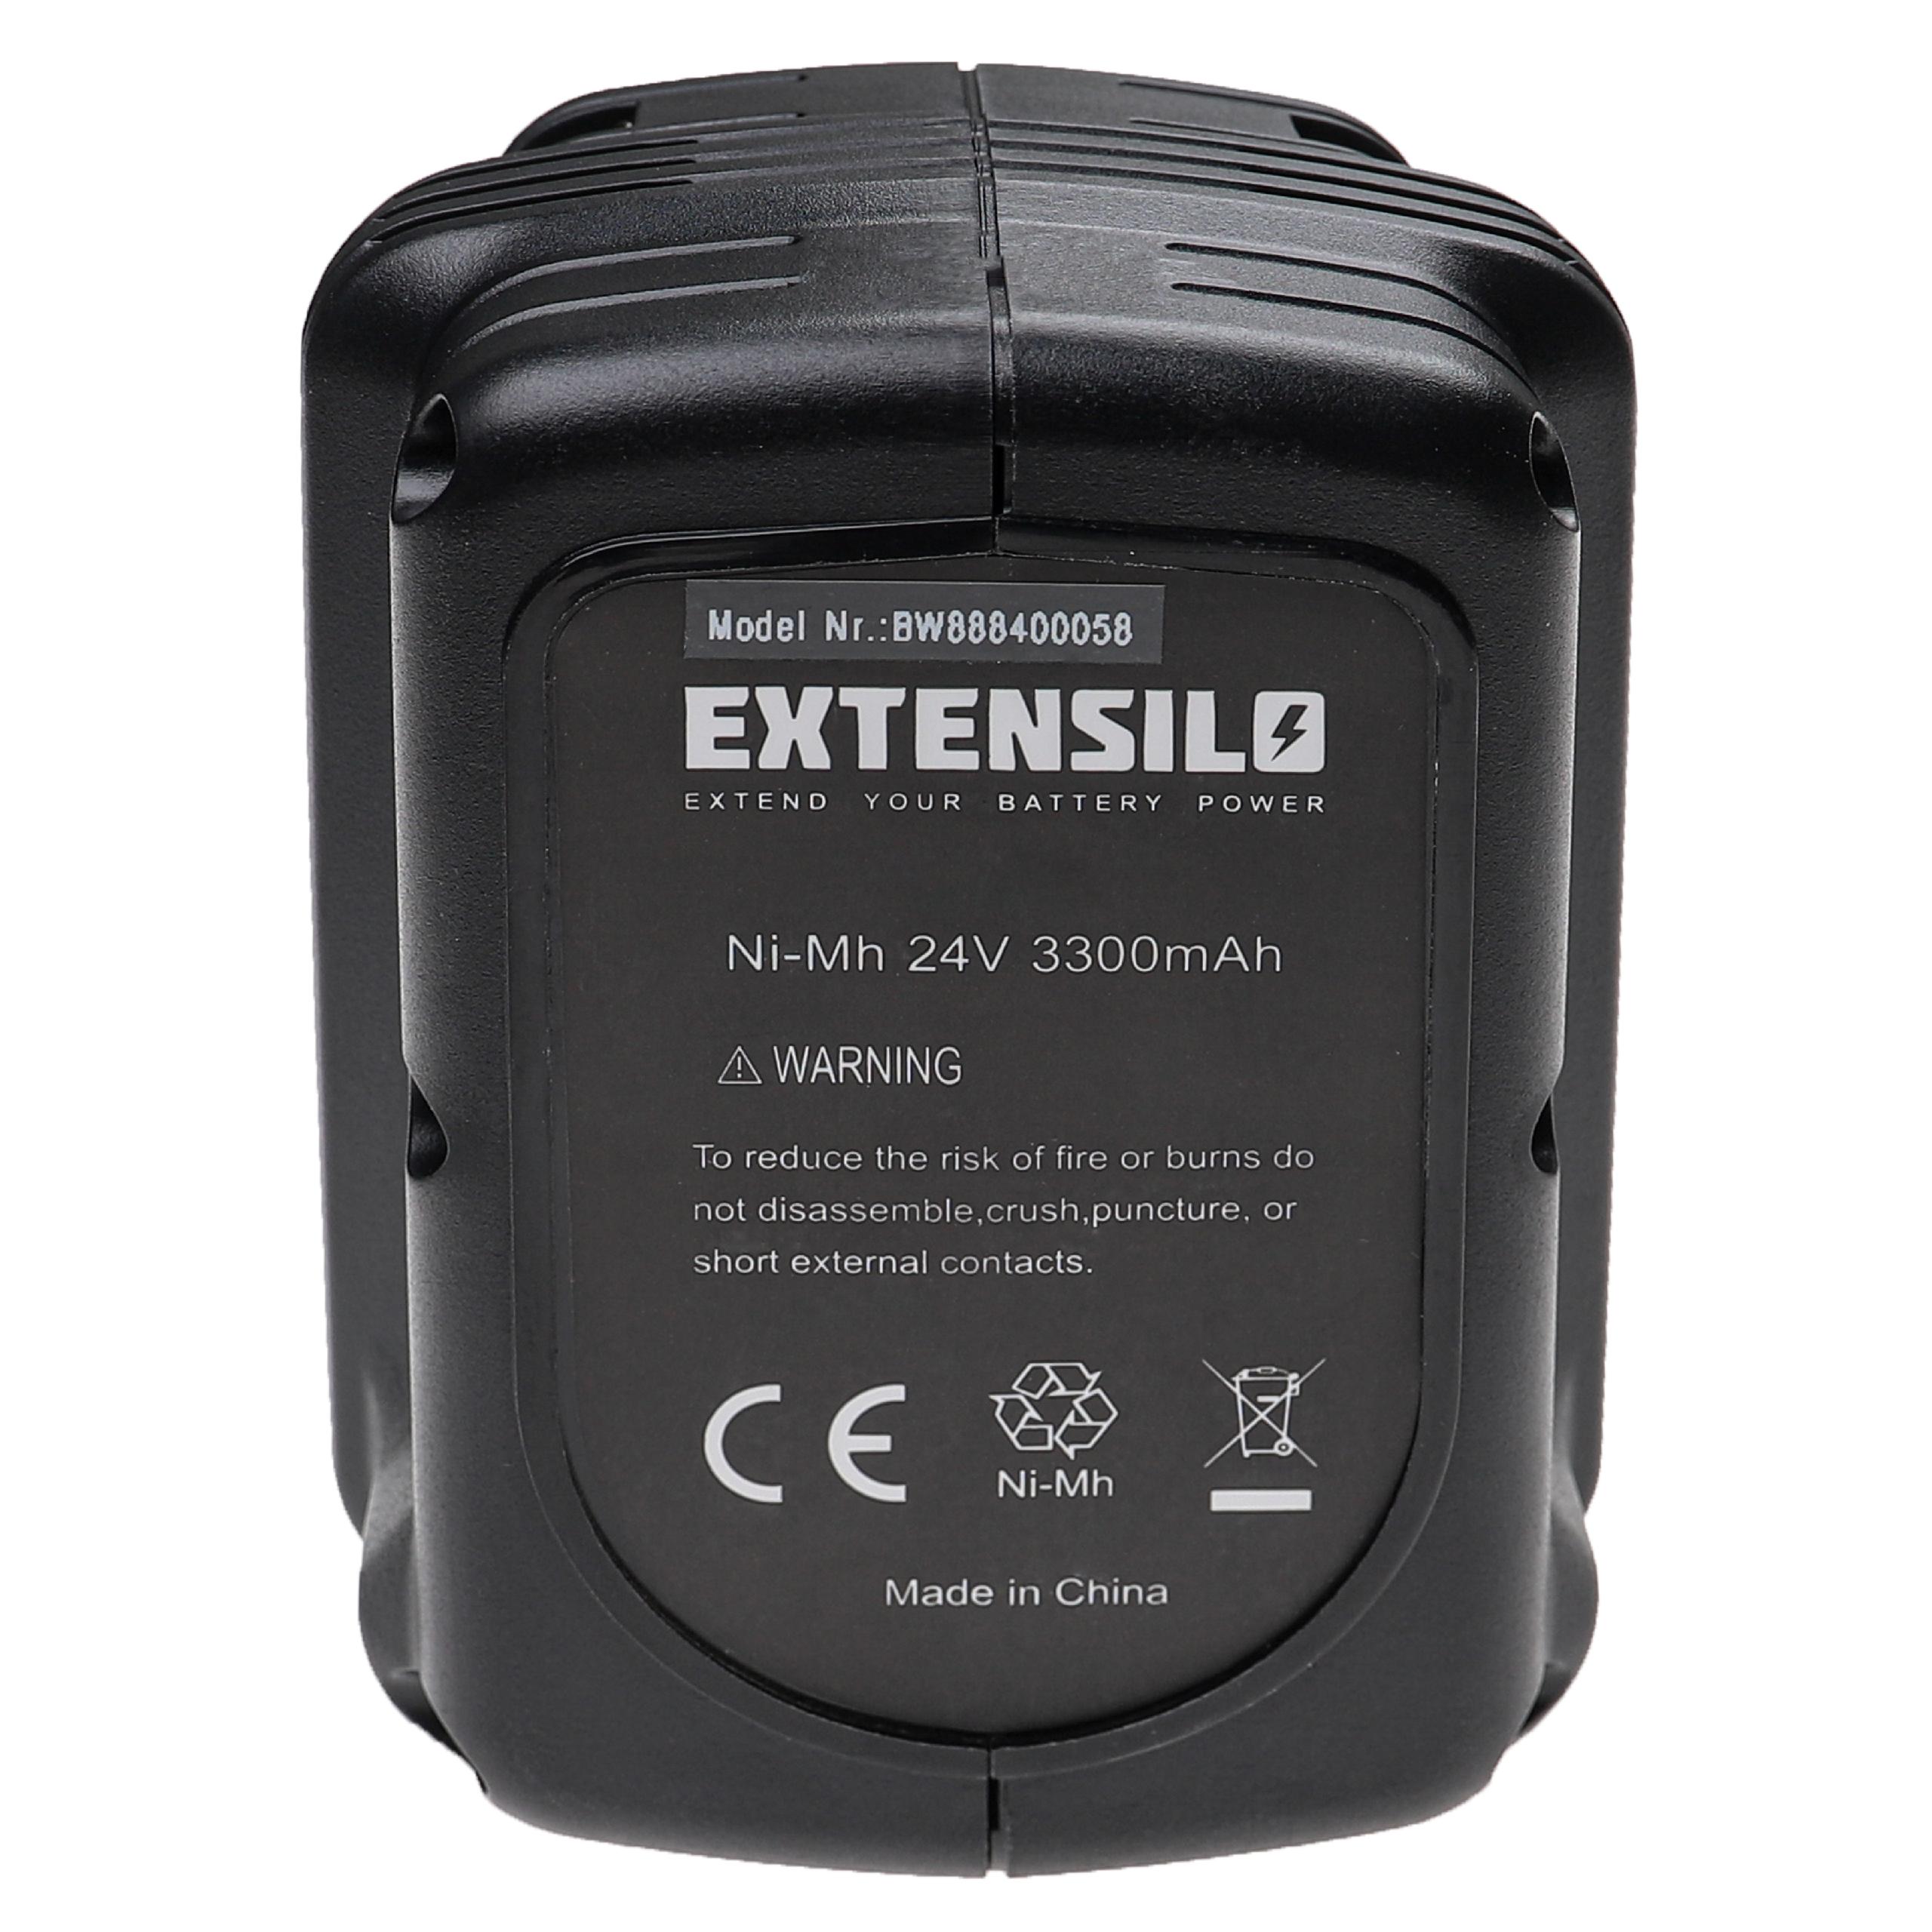 Batterie remplace Dewalt DE0240-XJ, DE0240, DE0243, DE0241 pour outil électrique - 3300 mAh, 24 V, NiMH